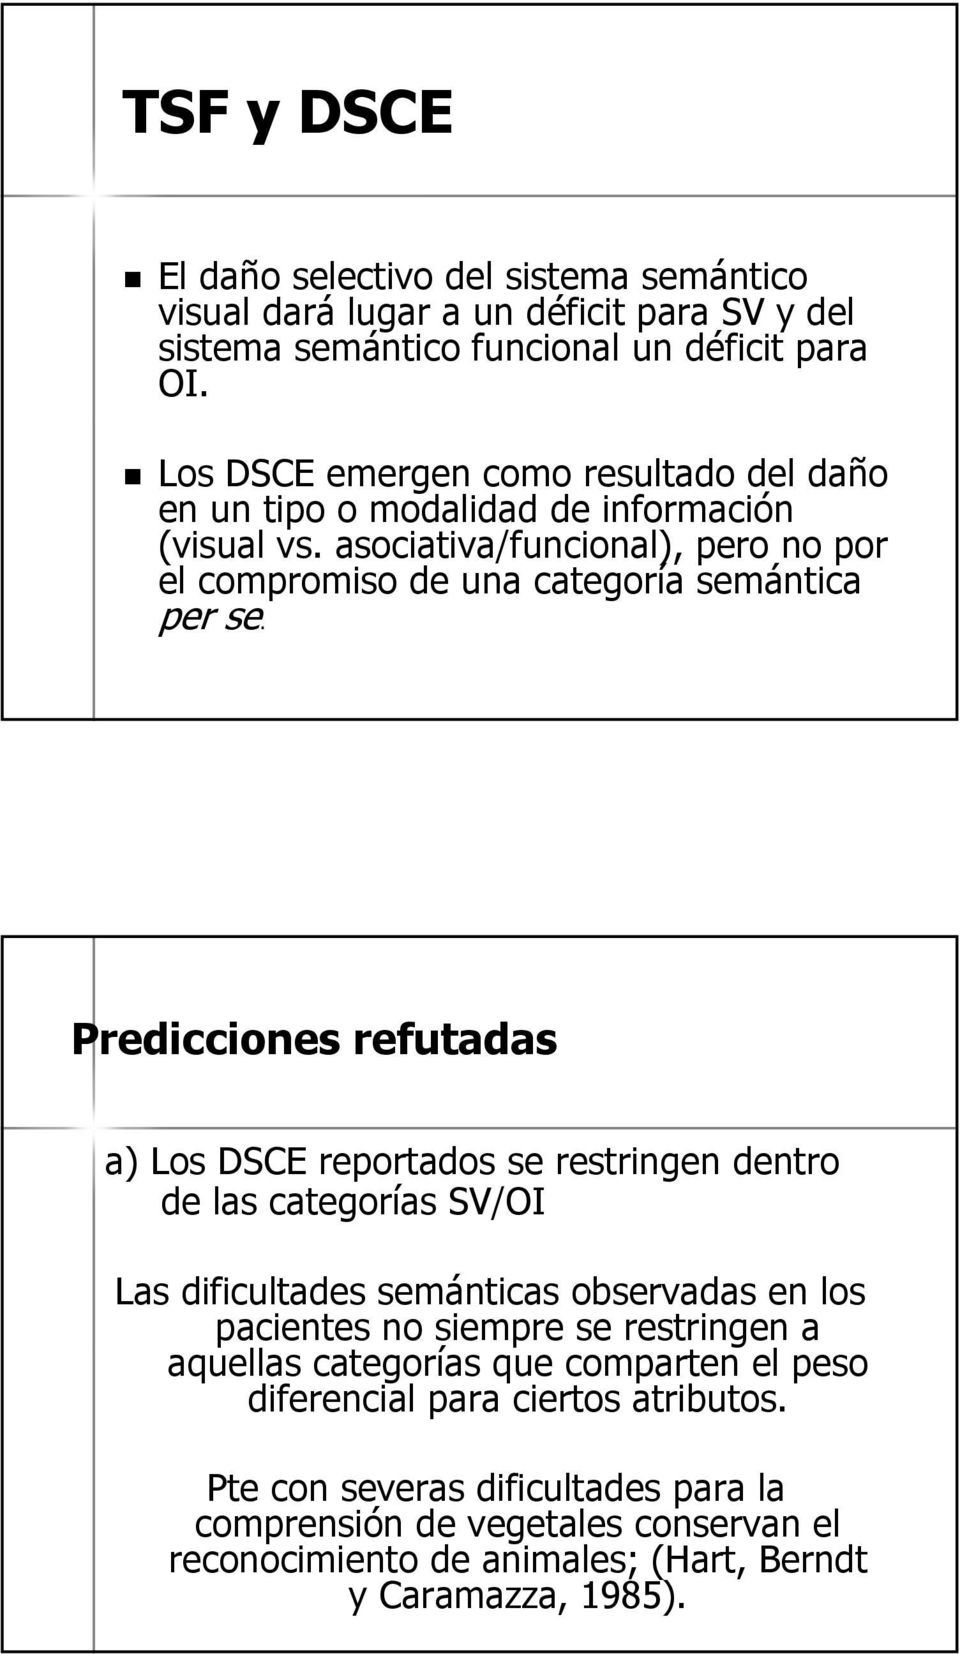 Predicciones refutadas a) Los DSCE reportados se restringen dentro de las categorías SV/OI Las dificultades semánticas observadas en los pacientes no siempre se restringen a